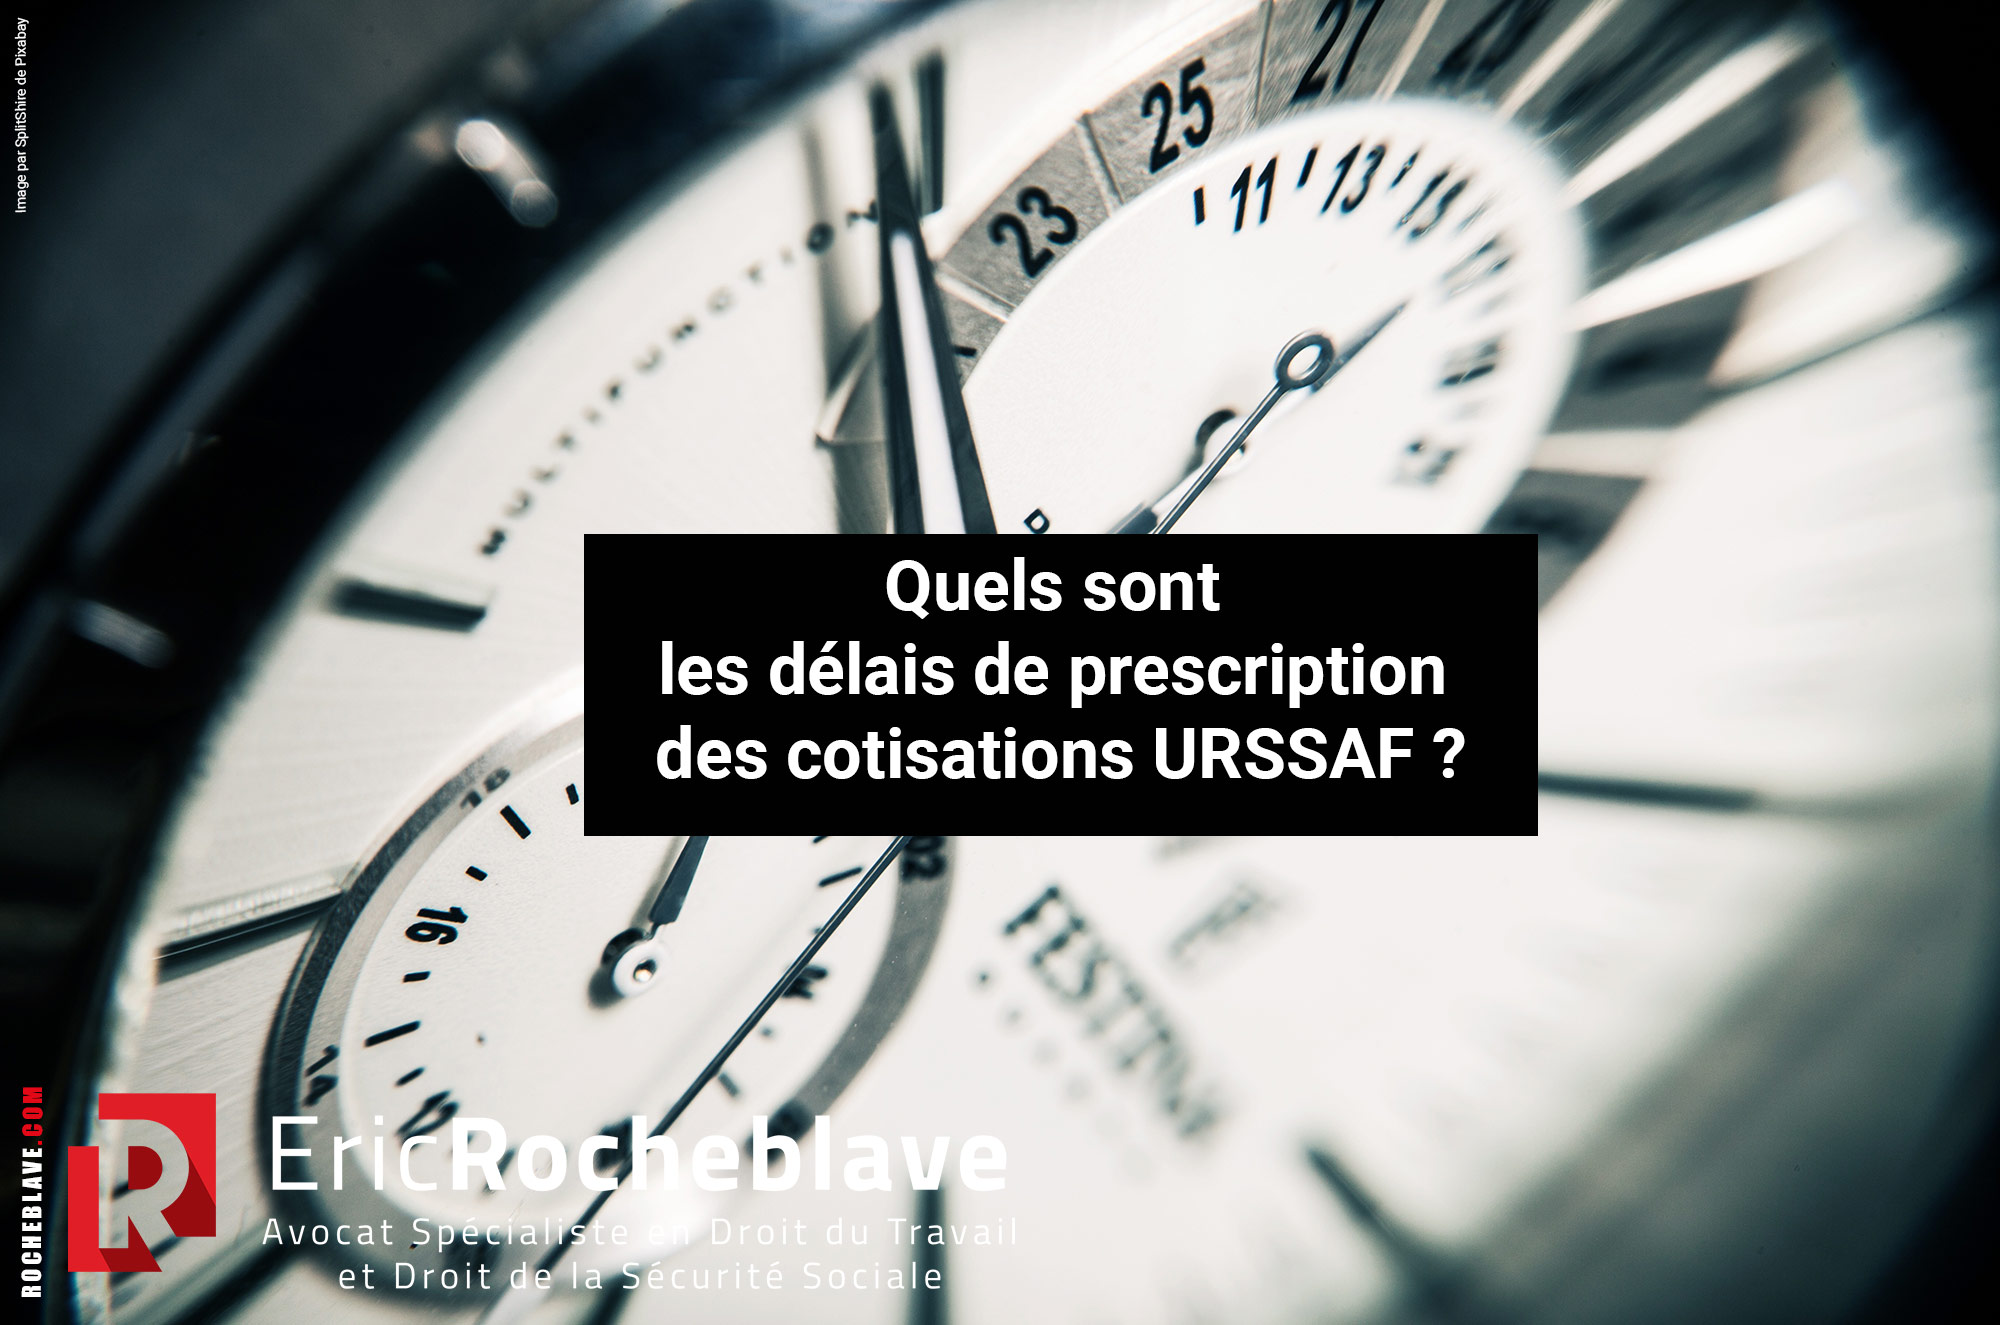 Quels sont les délais de prescription des cotisations URSSAF ?